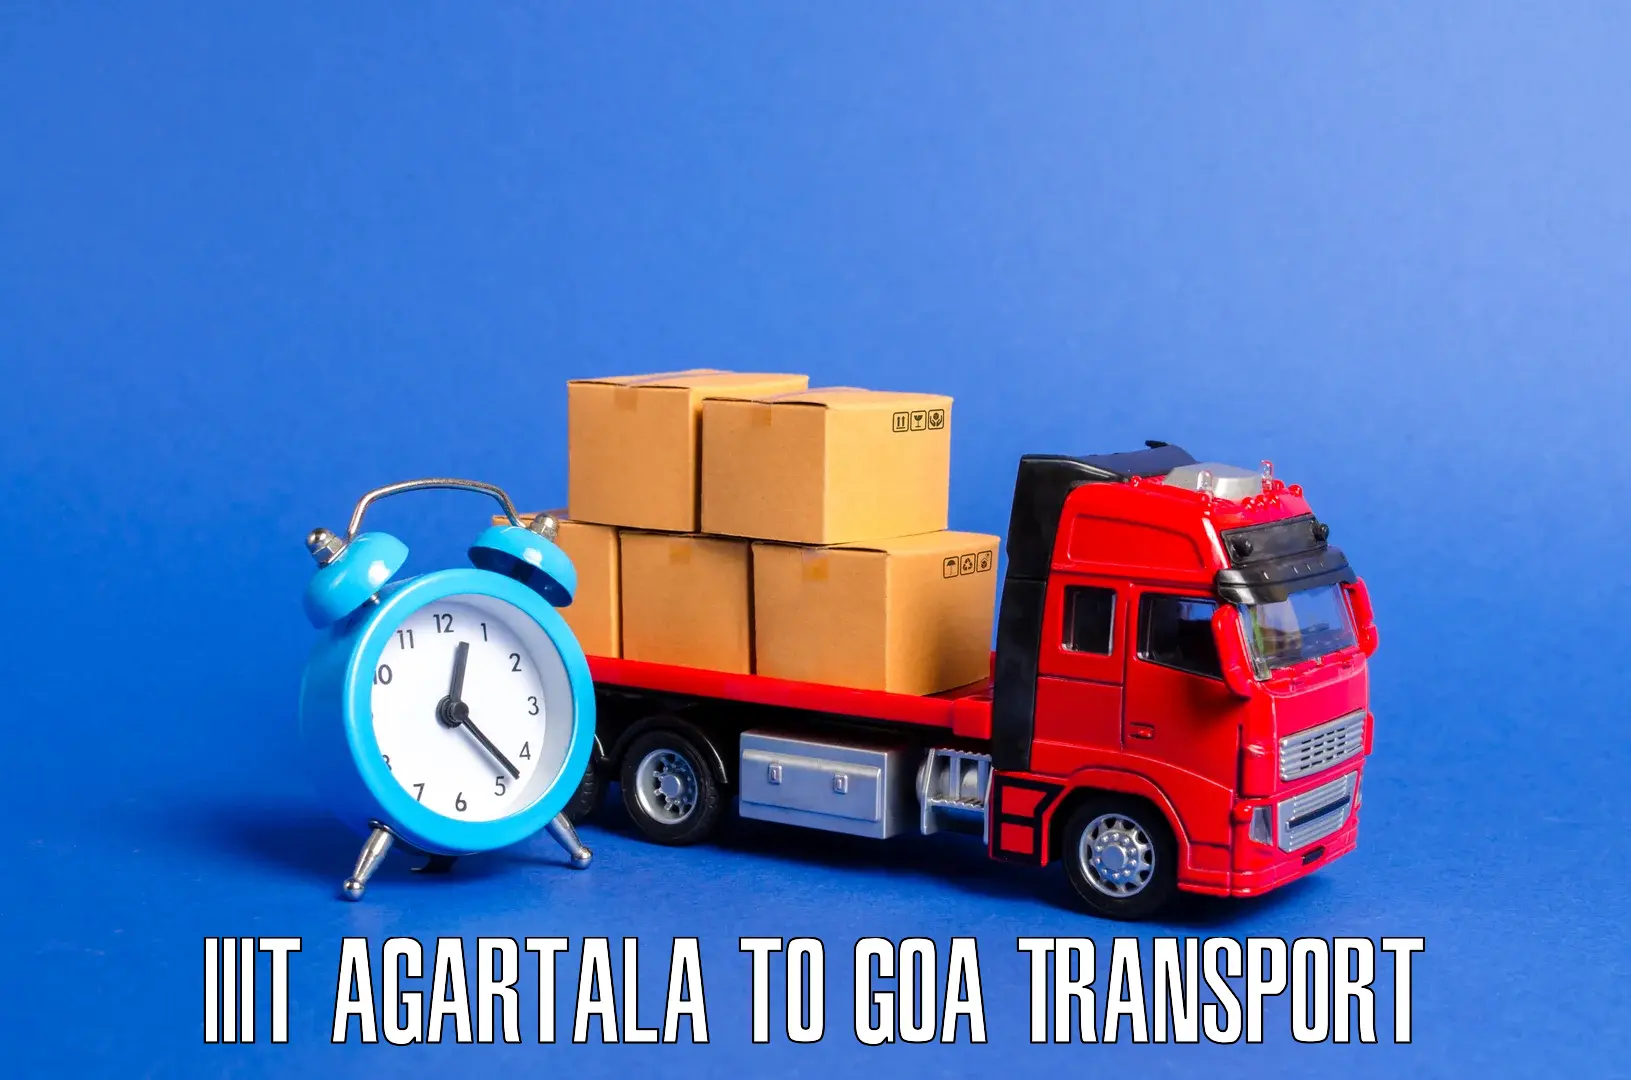 Bike transfer IIIT Agartala to IIT Goa